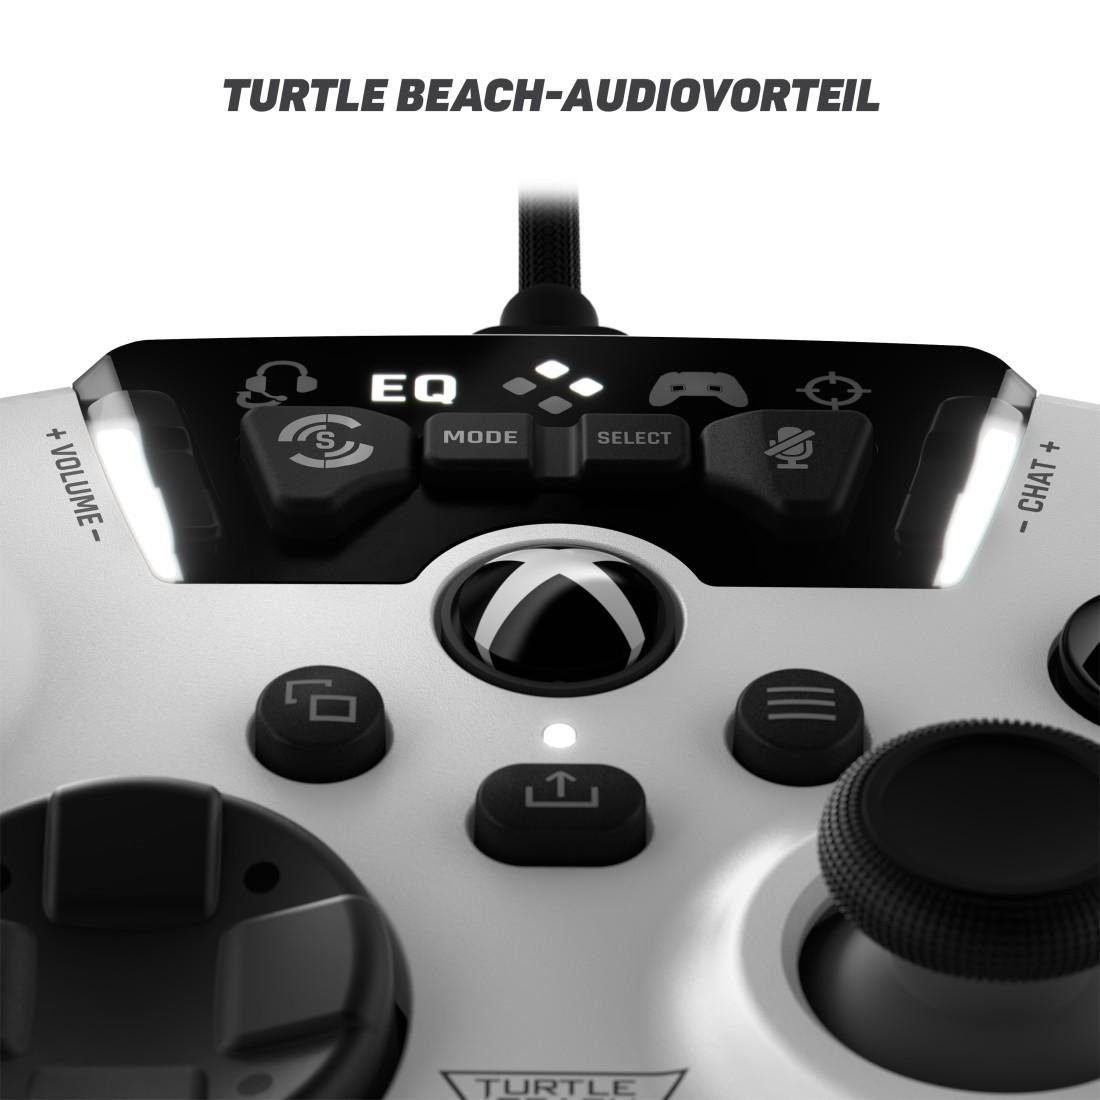 Series Series X/Xbox Beach weiß Controller S Turtle Xbox Recon für